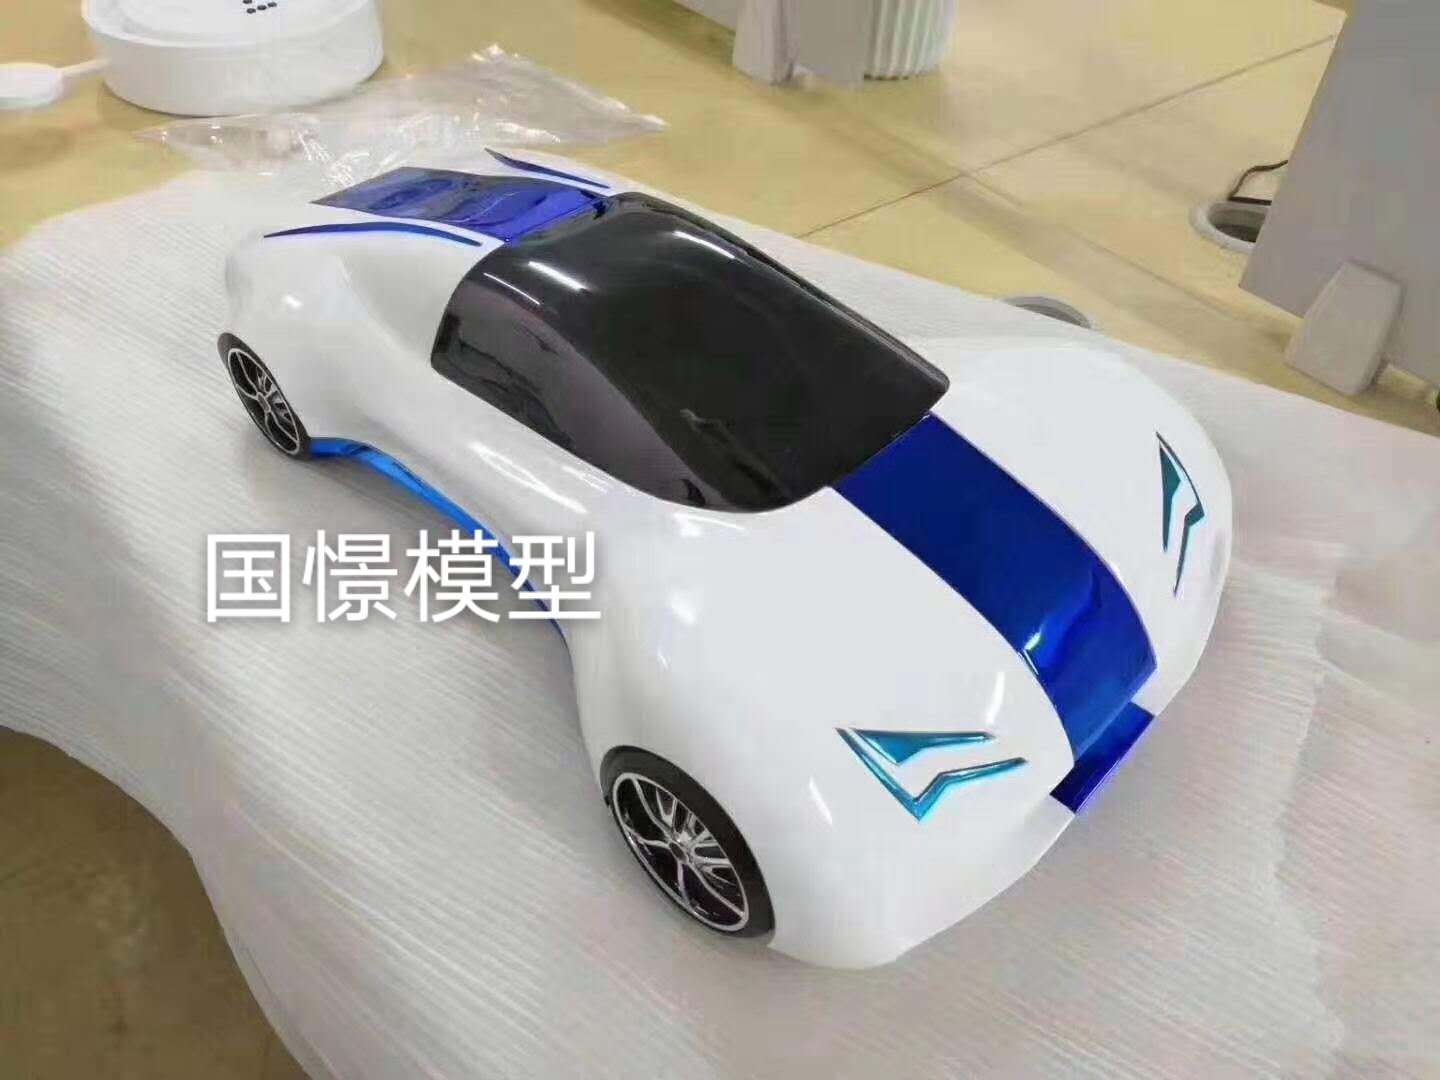 东阳市车辆模型